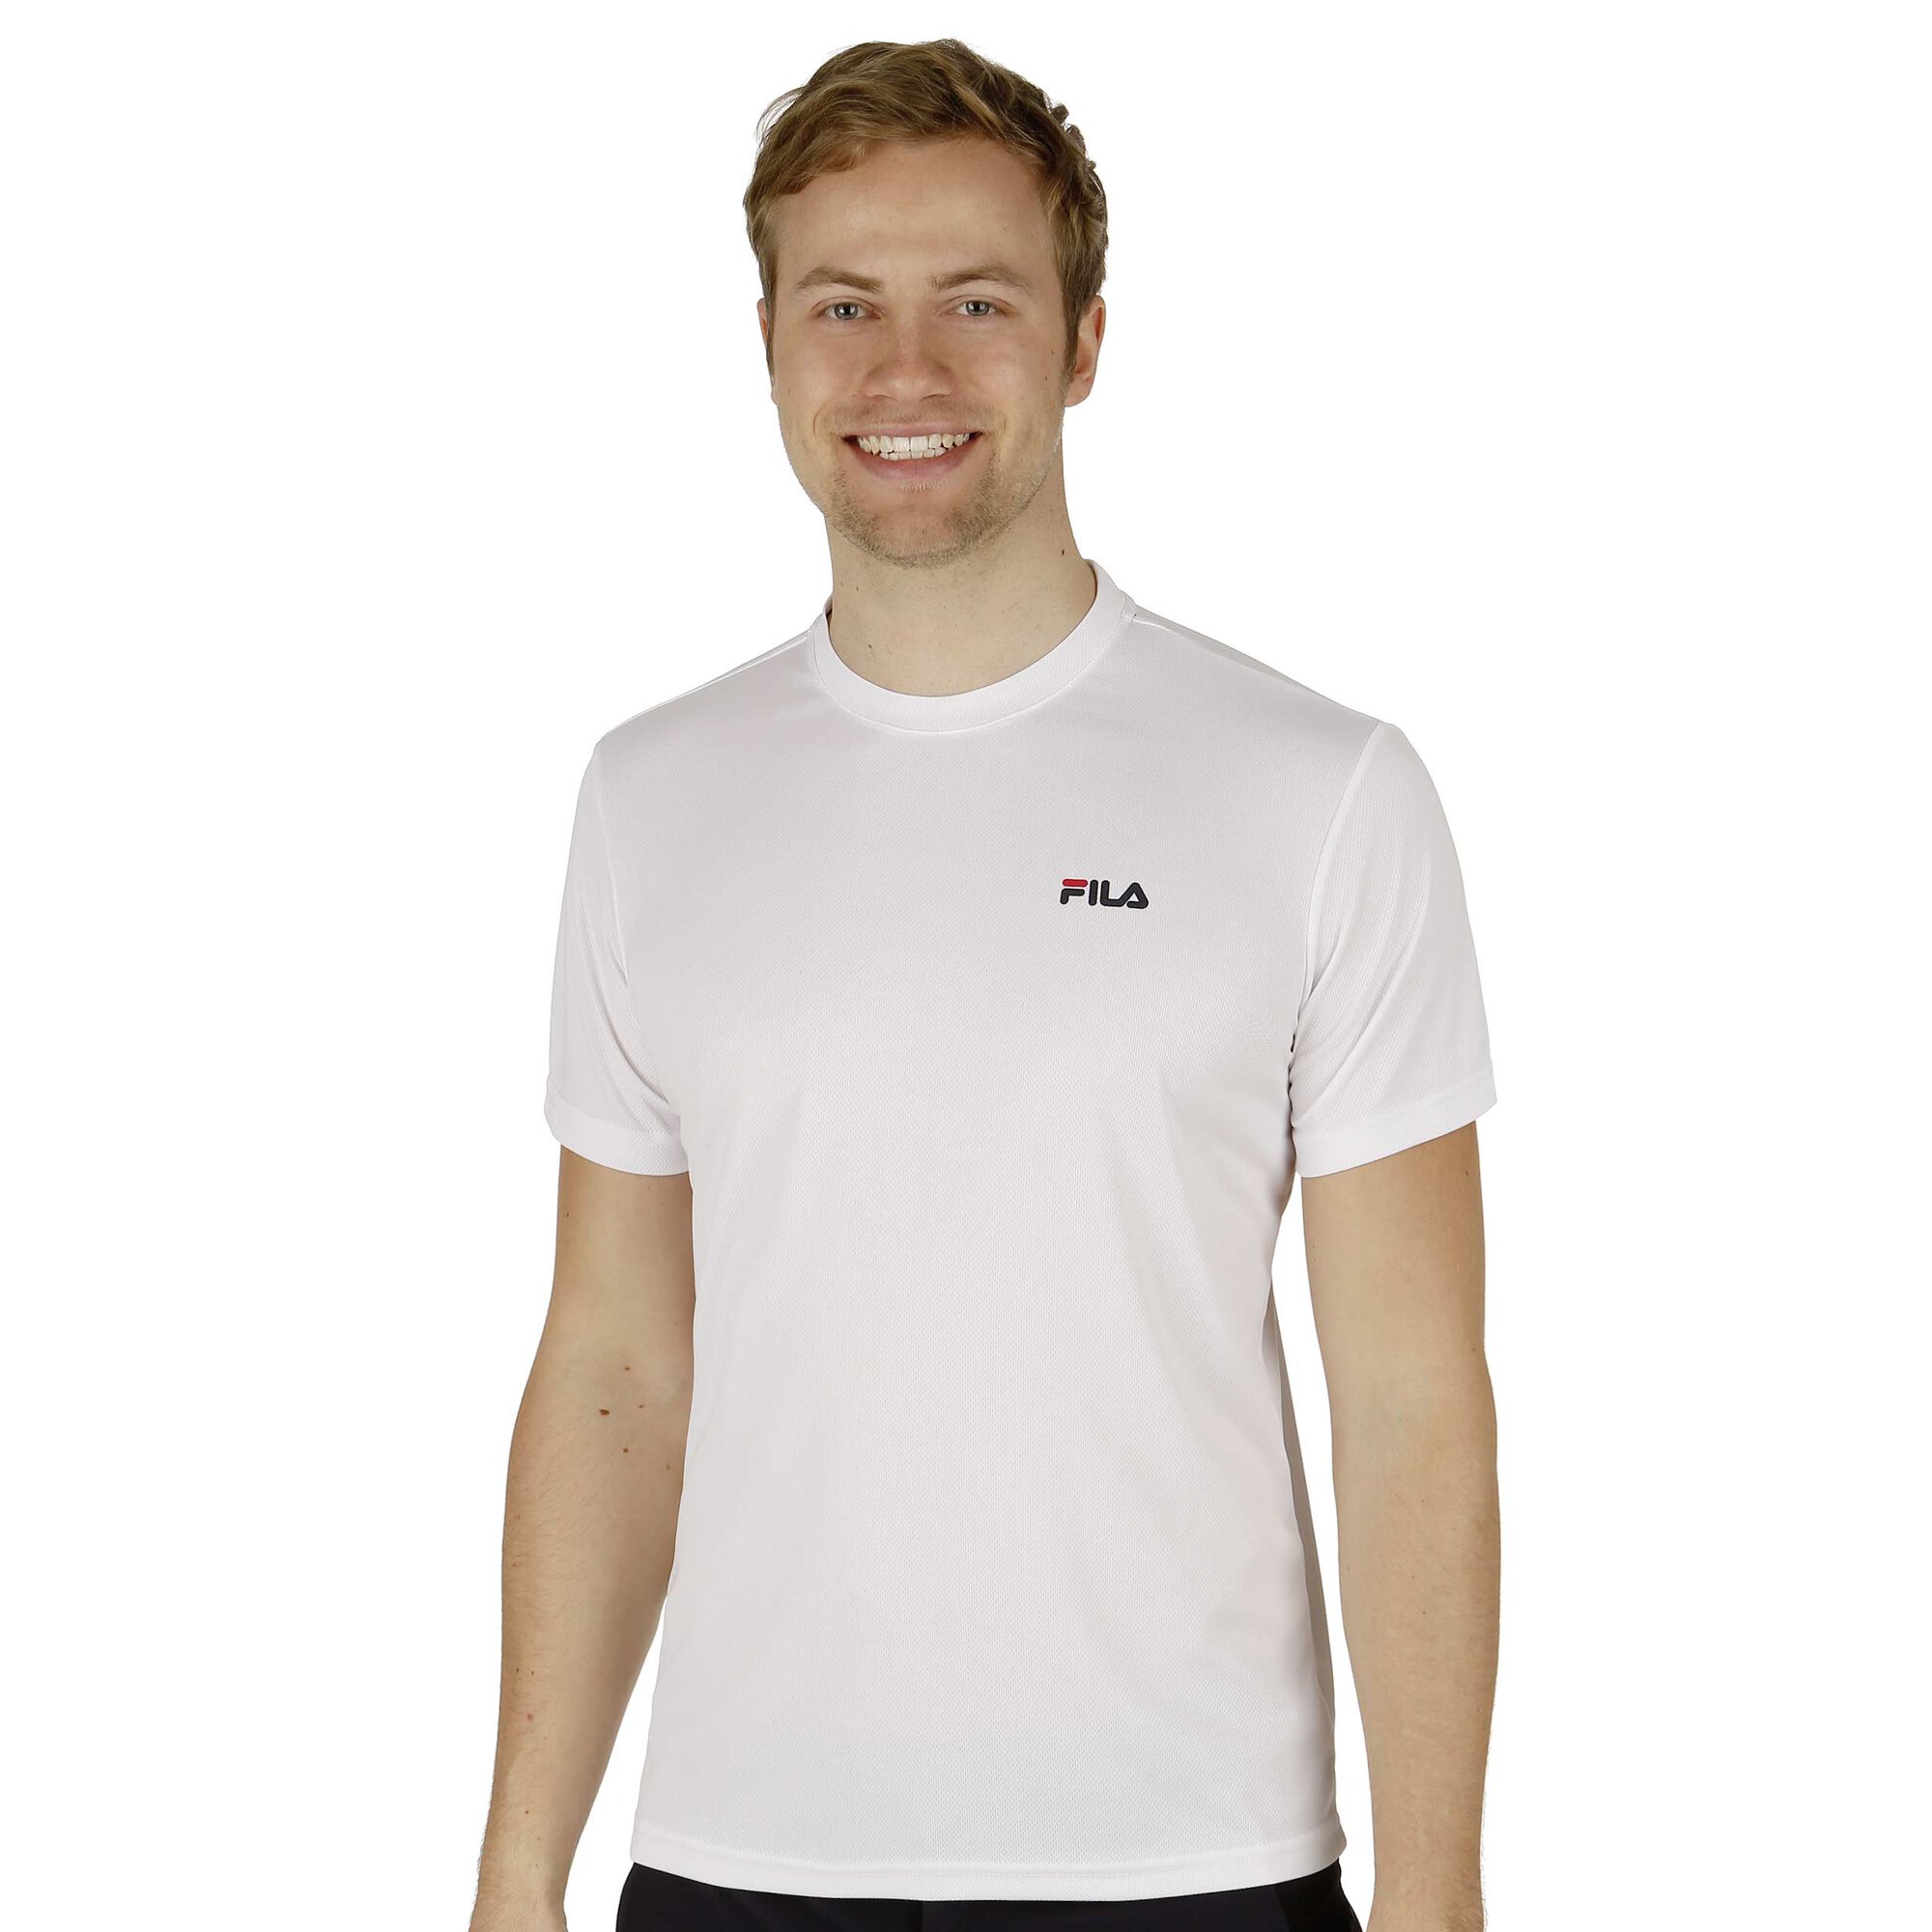 Betsy Trotwood oppakken Veroveren buy Fila Small Logo T-Shirt Men - White online | Tennis-Point